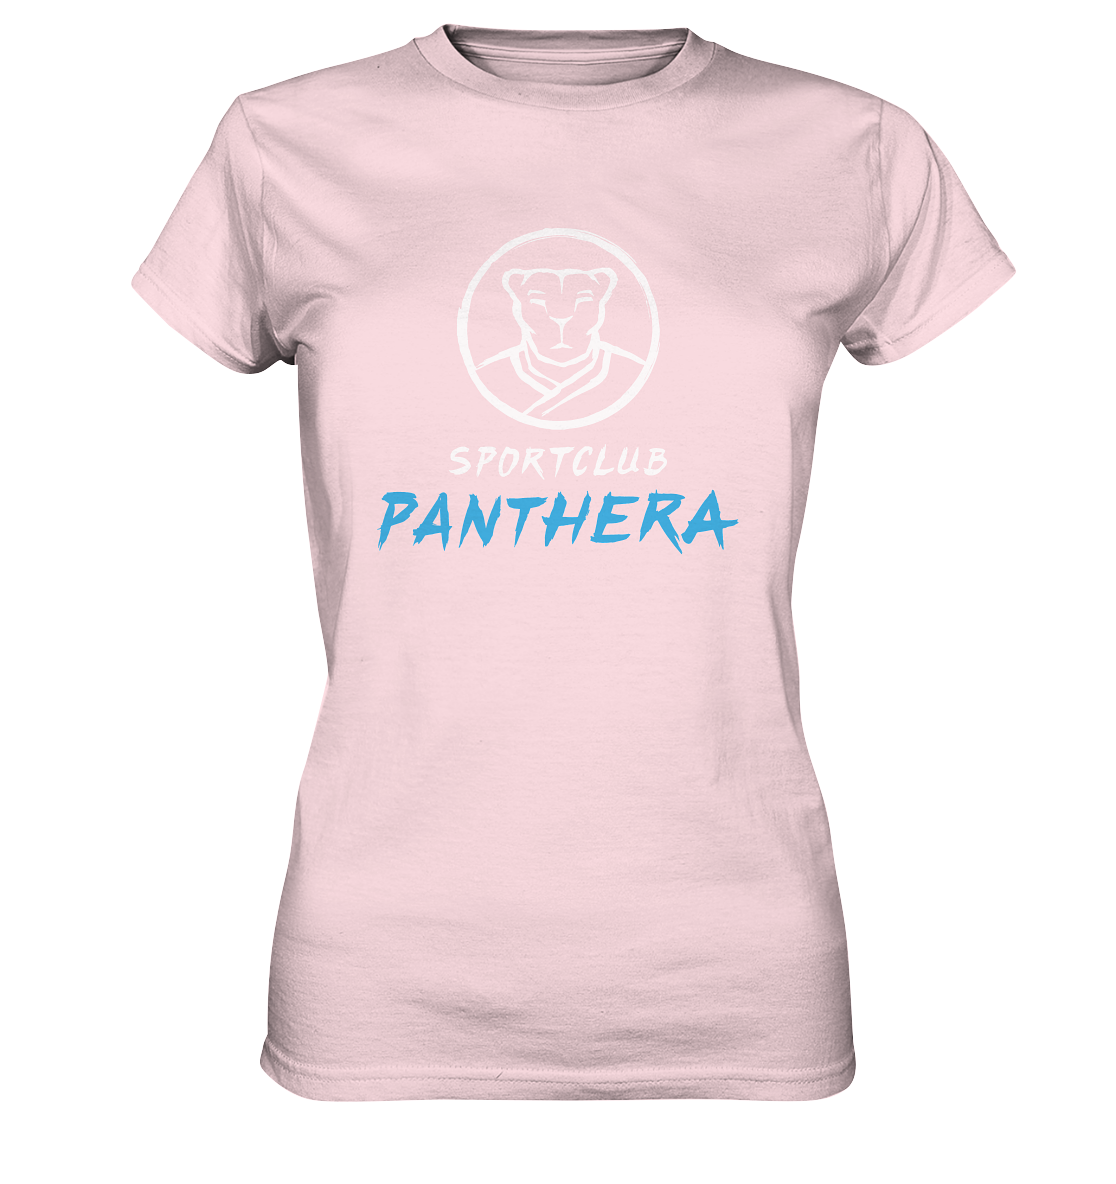 SPORTCLUB PANTHERA - Ladies Basic Shirt